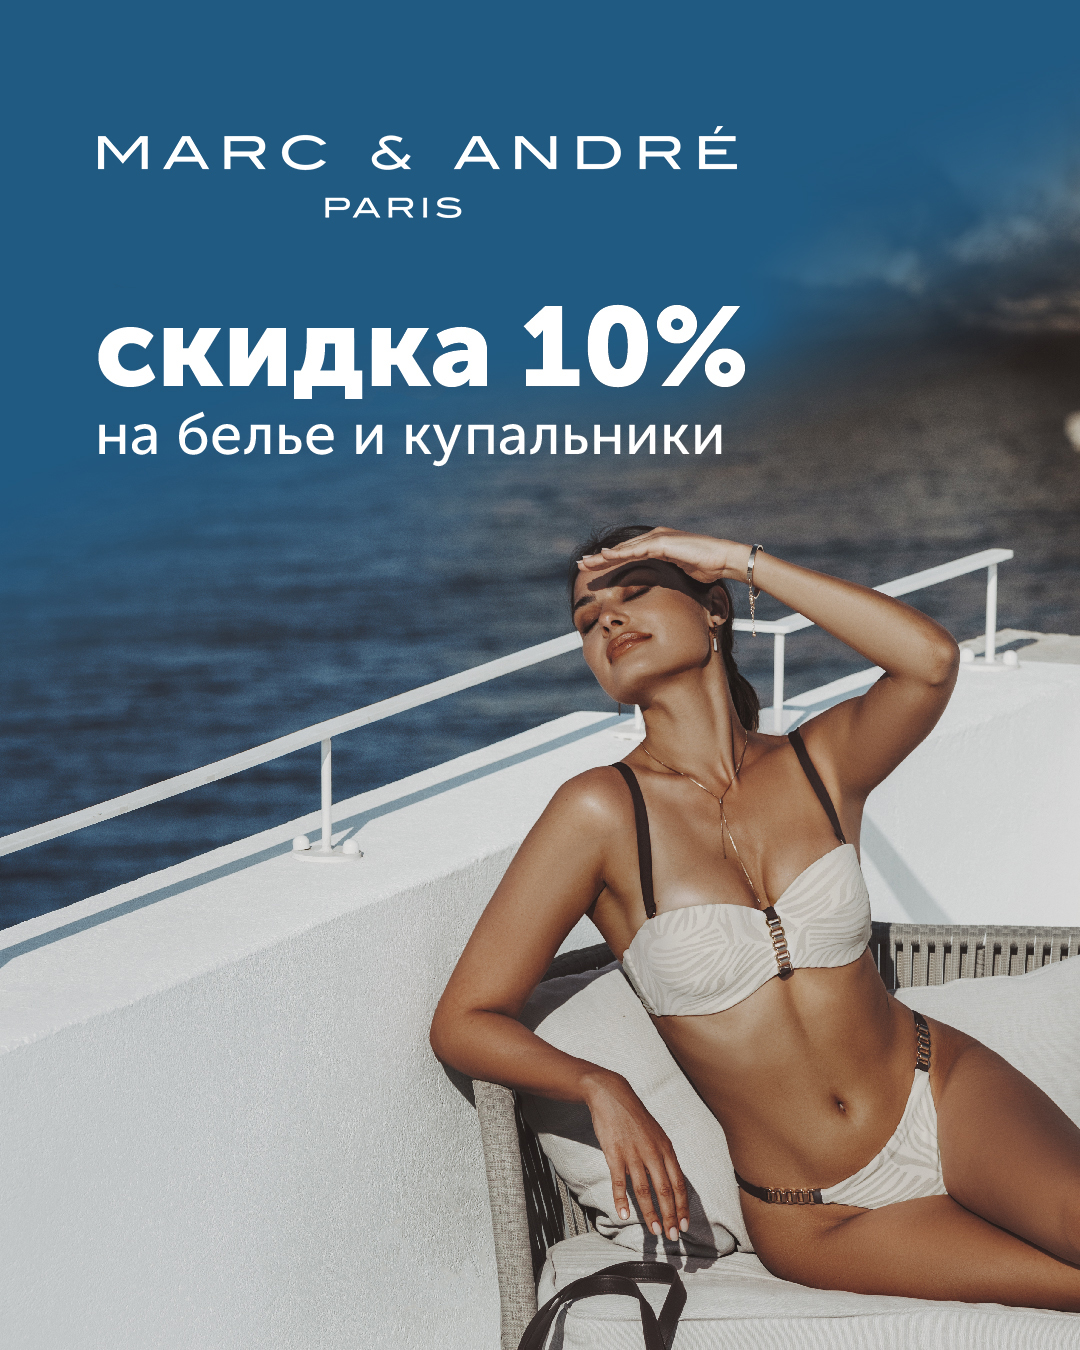 Скидка 10% на купальники и бельё от Marc & André!